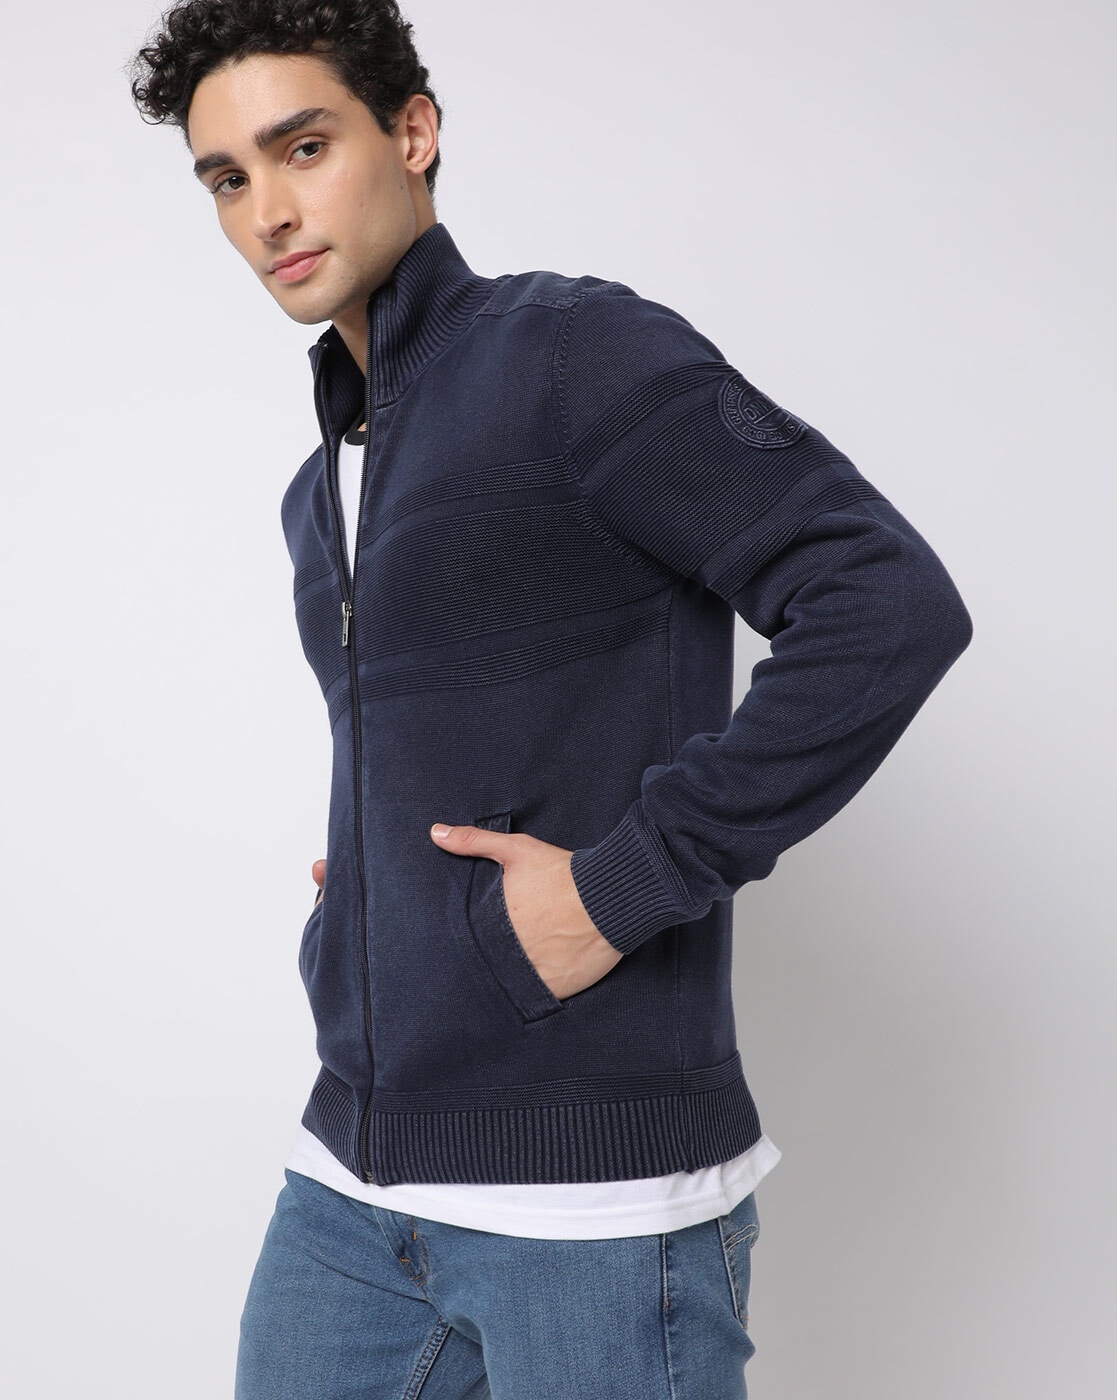 Avamo Men Cardigan Sweater Open Front Outwear Long Sleeve Jacket Mens Plain  Cardigans Work Sweaters Navy Blue XL 